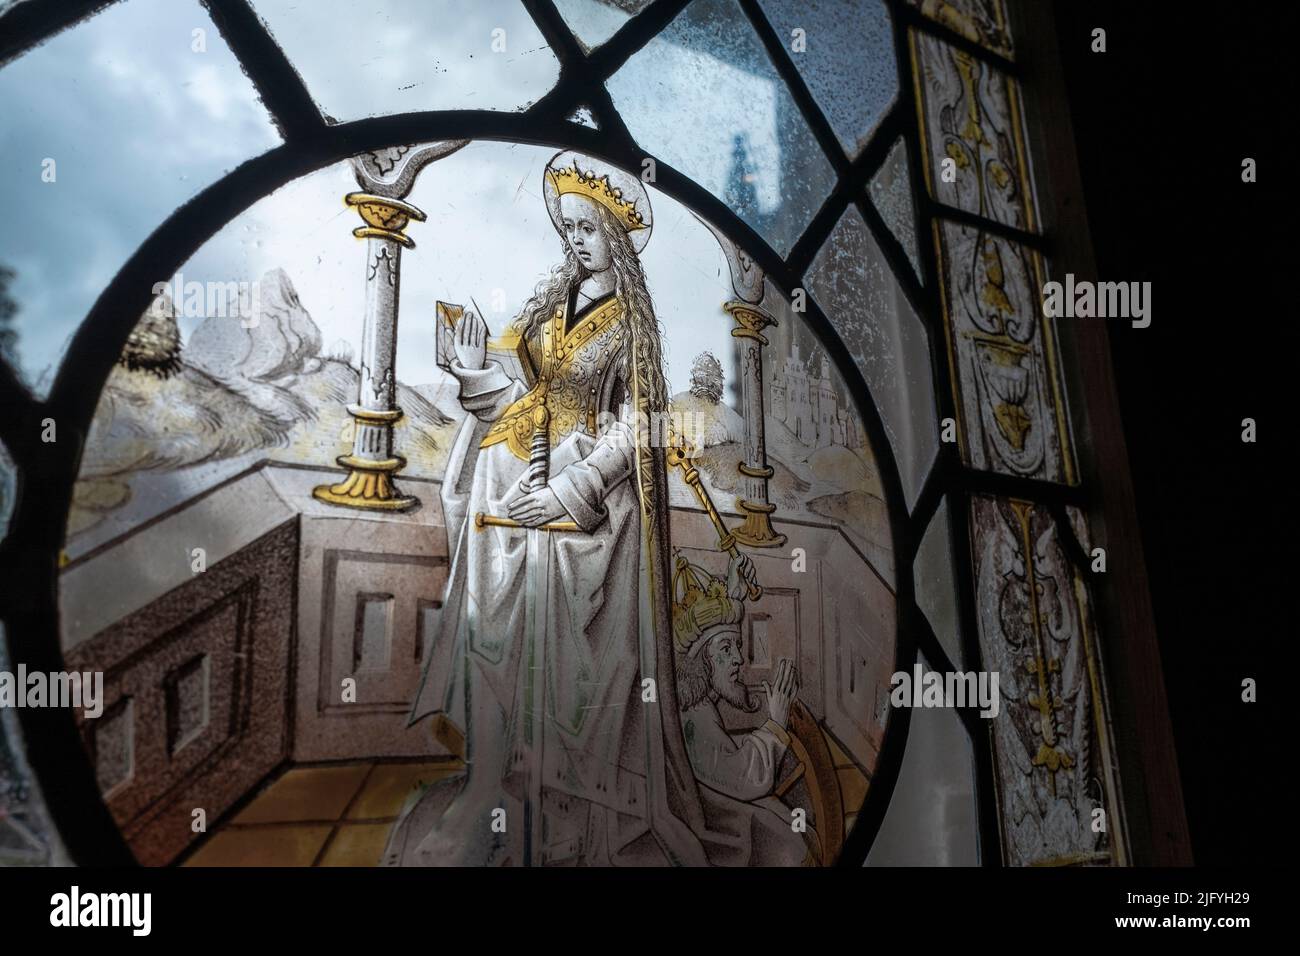 Flacher Fokus auf antiken Fenster mit Zeichnung Buntglas, das eine mittelalterliche französische Königin darstellt Stockfoto